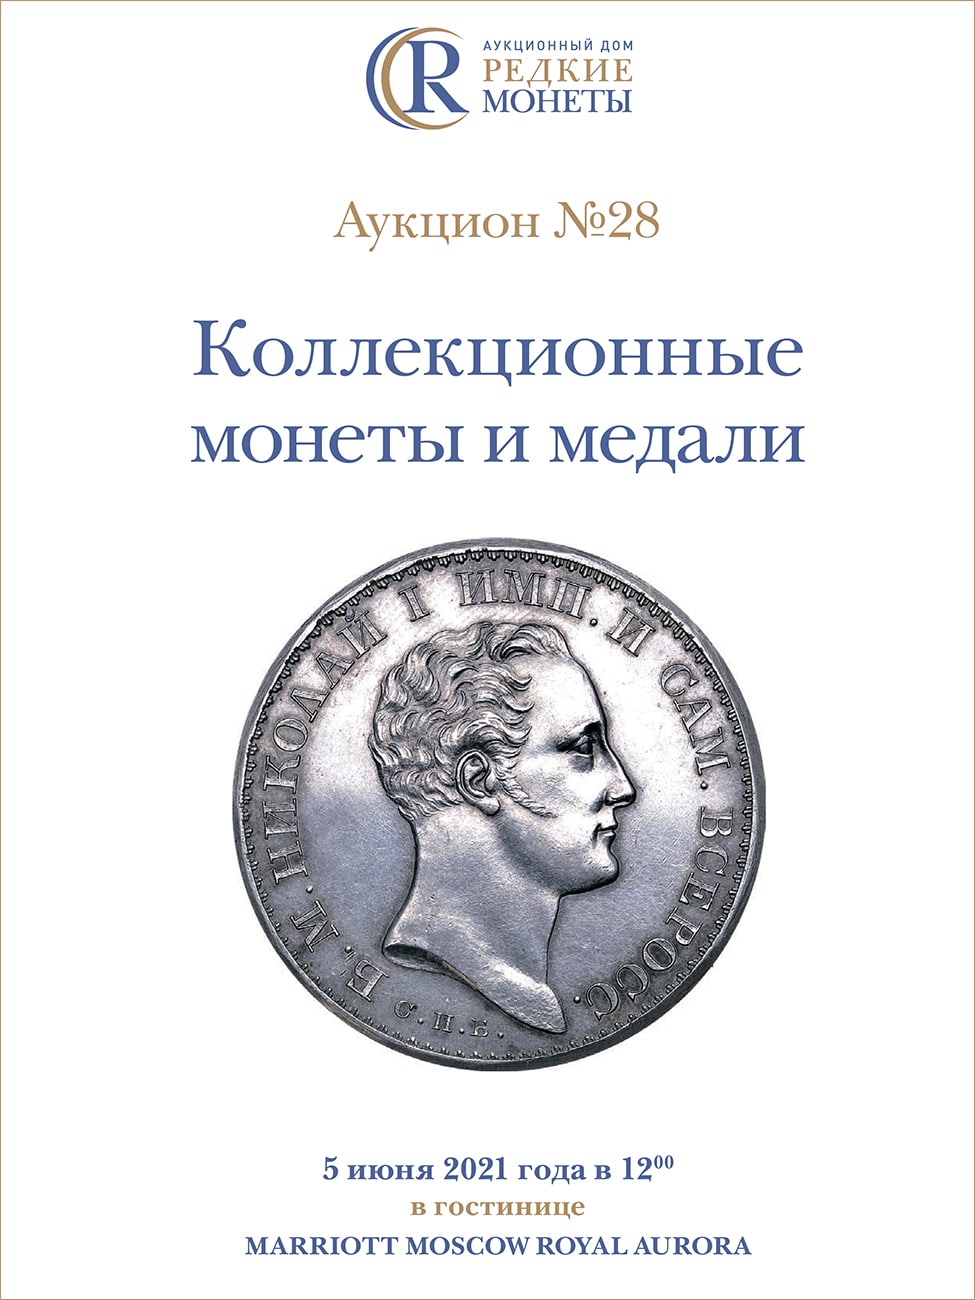 Артикул №21-09777, Каталог 2021 года. Коллекционные Монеты, Аукцион №28, 5 июня 2021 года.